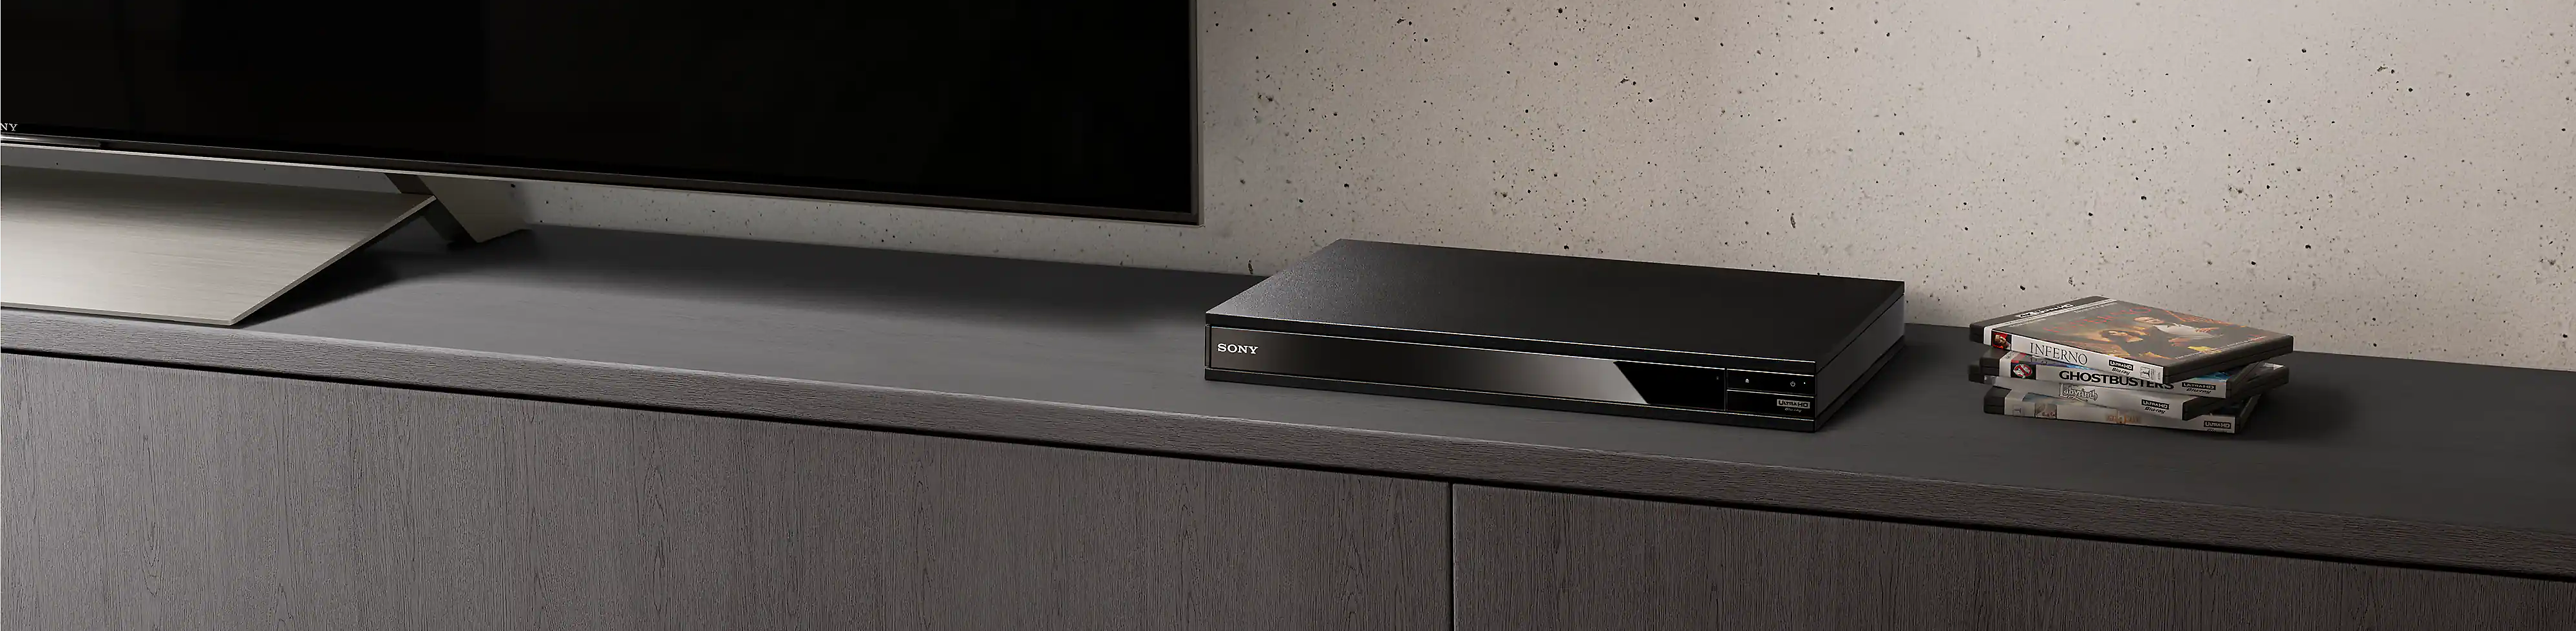 Črn predvajalnik Blu-ray Disc je prikazan med kupom plošč Blu-ray in črnim televizorjem.